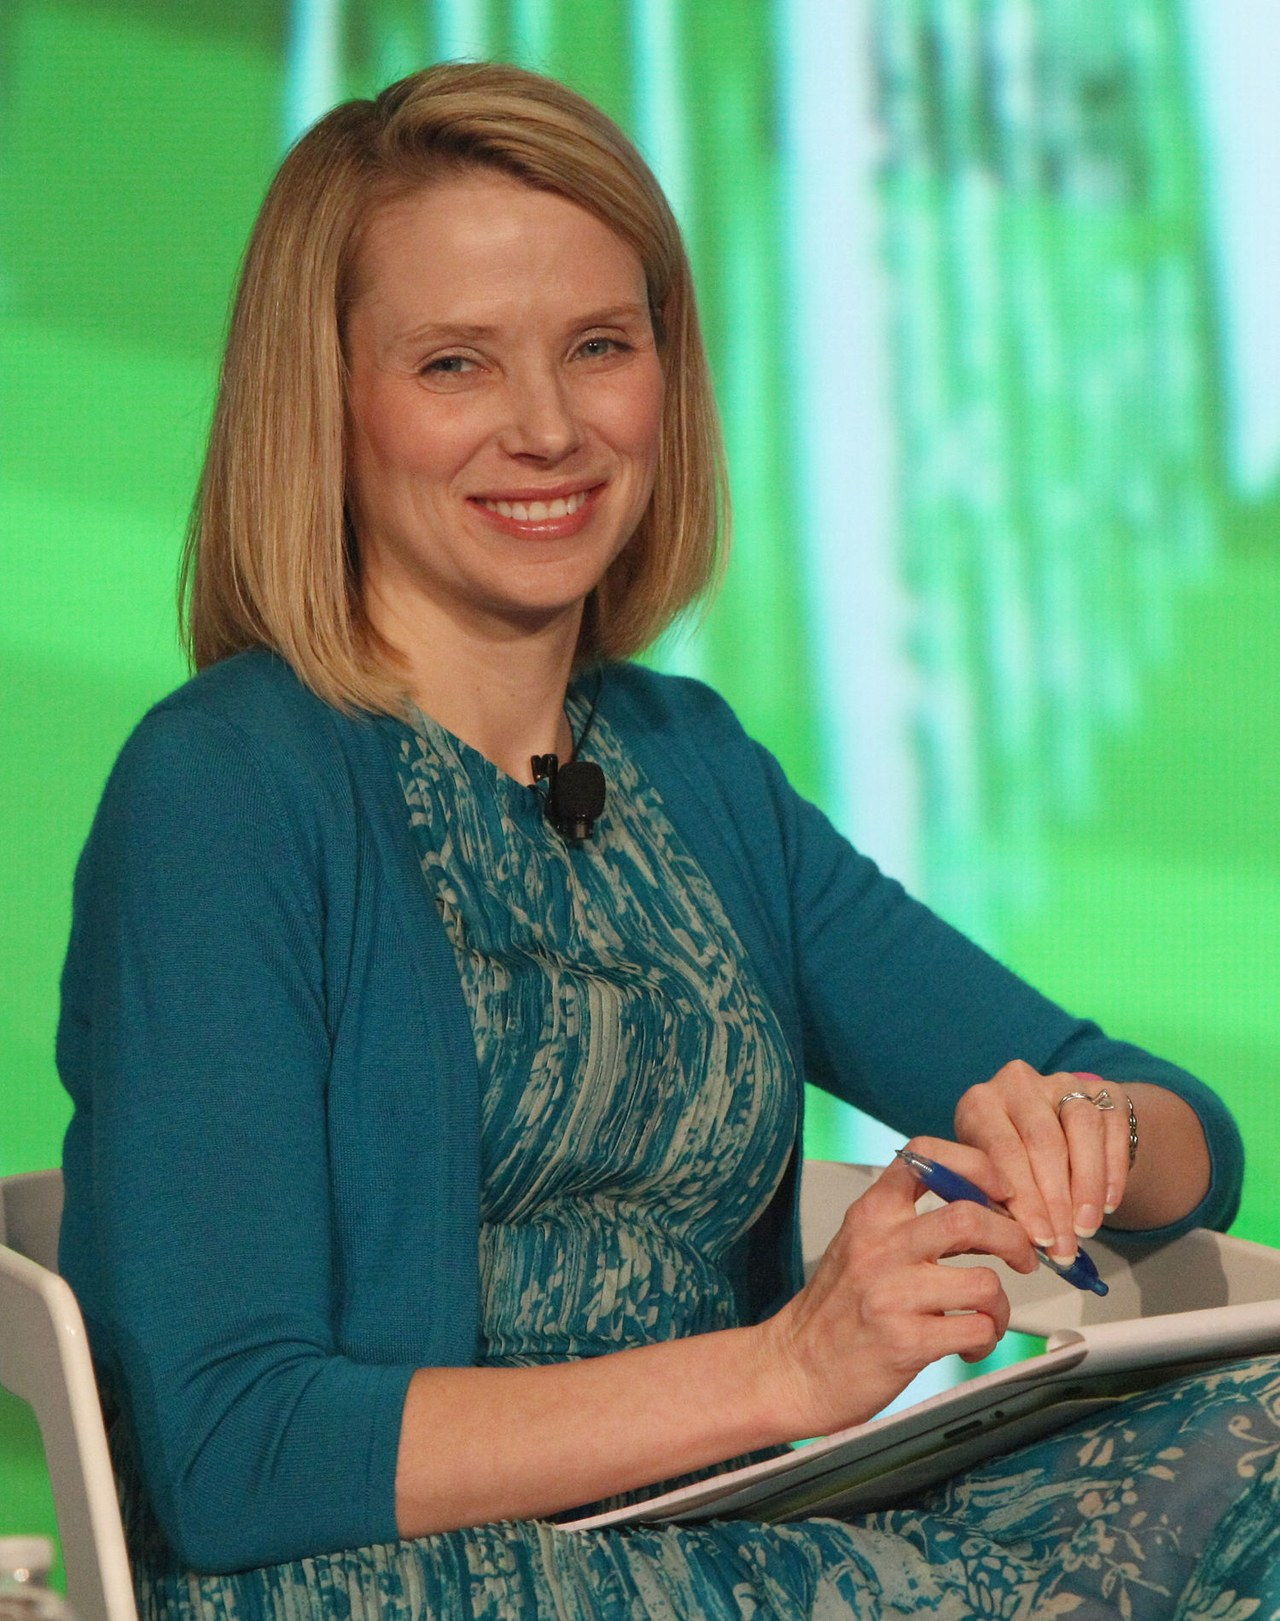 玛丽莎 Mayer becomes the CEO of Yahoo.